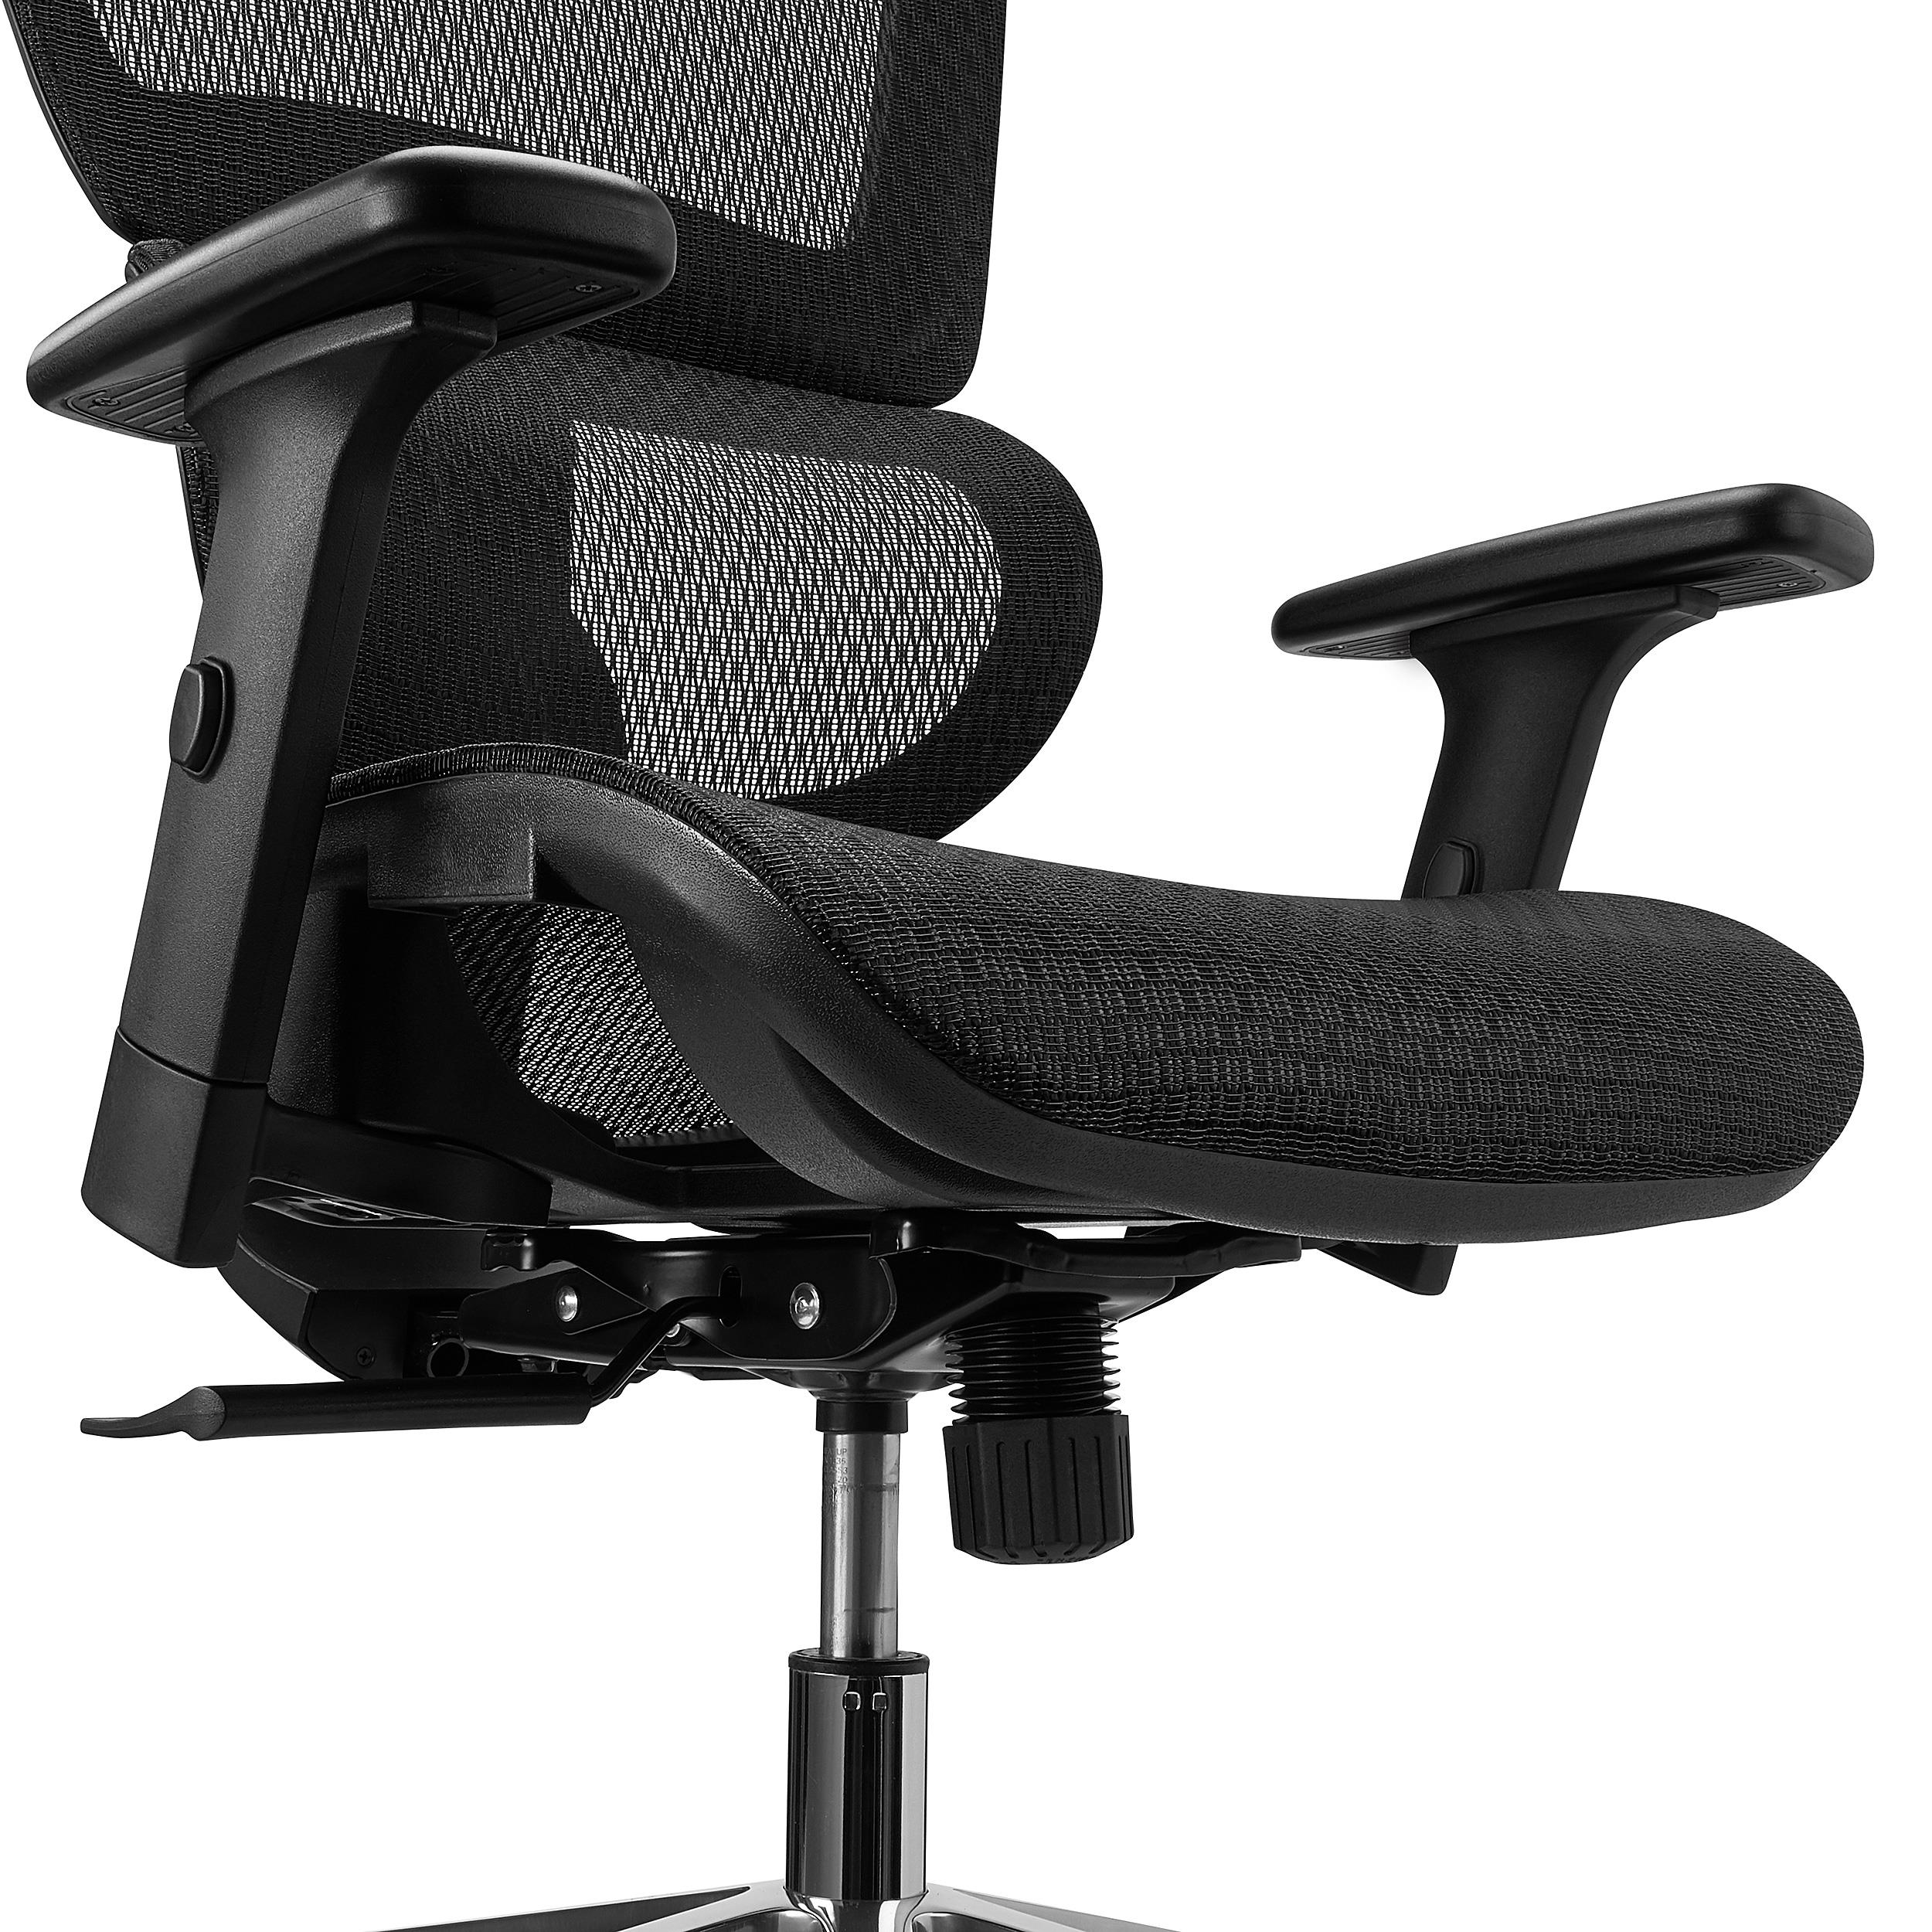 Chaise de bureau Joy Comfort - Ergonomique - Noir